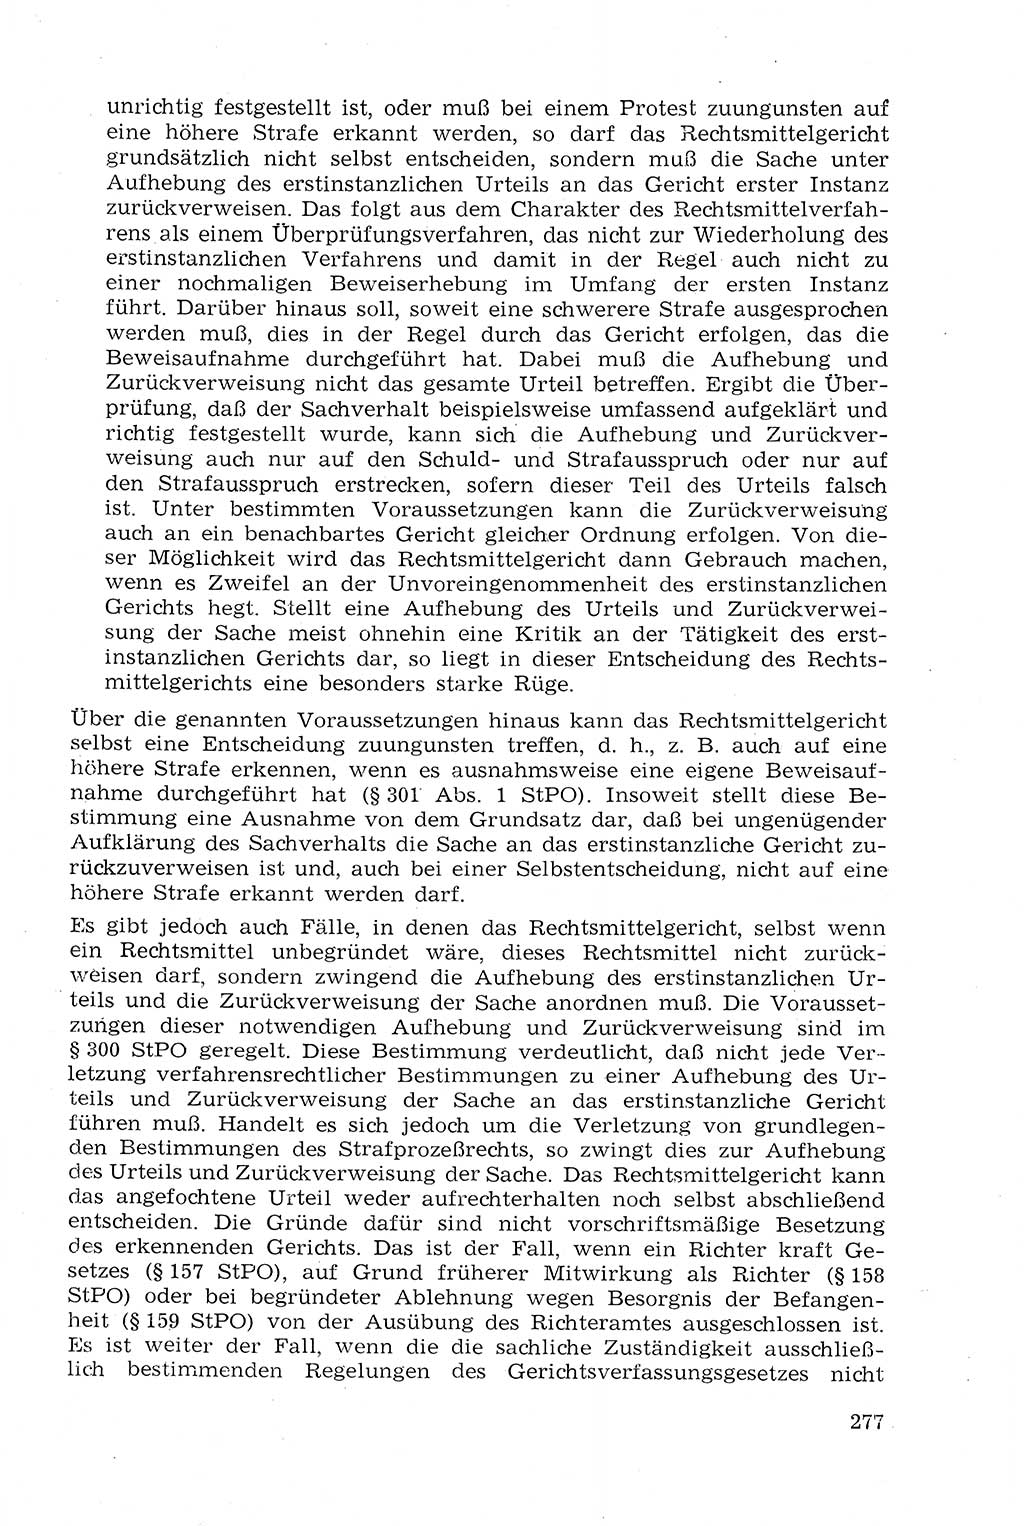 Strafprozeßrecht der DDR (Deutsche Demokratische Republik), Lehrmaterial 1969, Seite 277 (Strafprozeßr. DDR Lehrmat. 1969, S. 277)